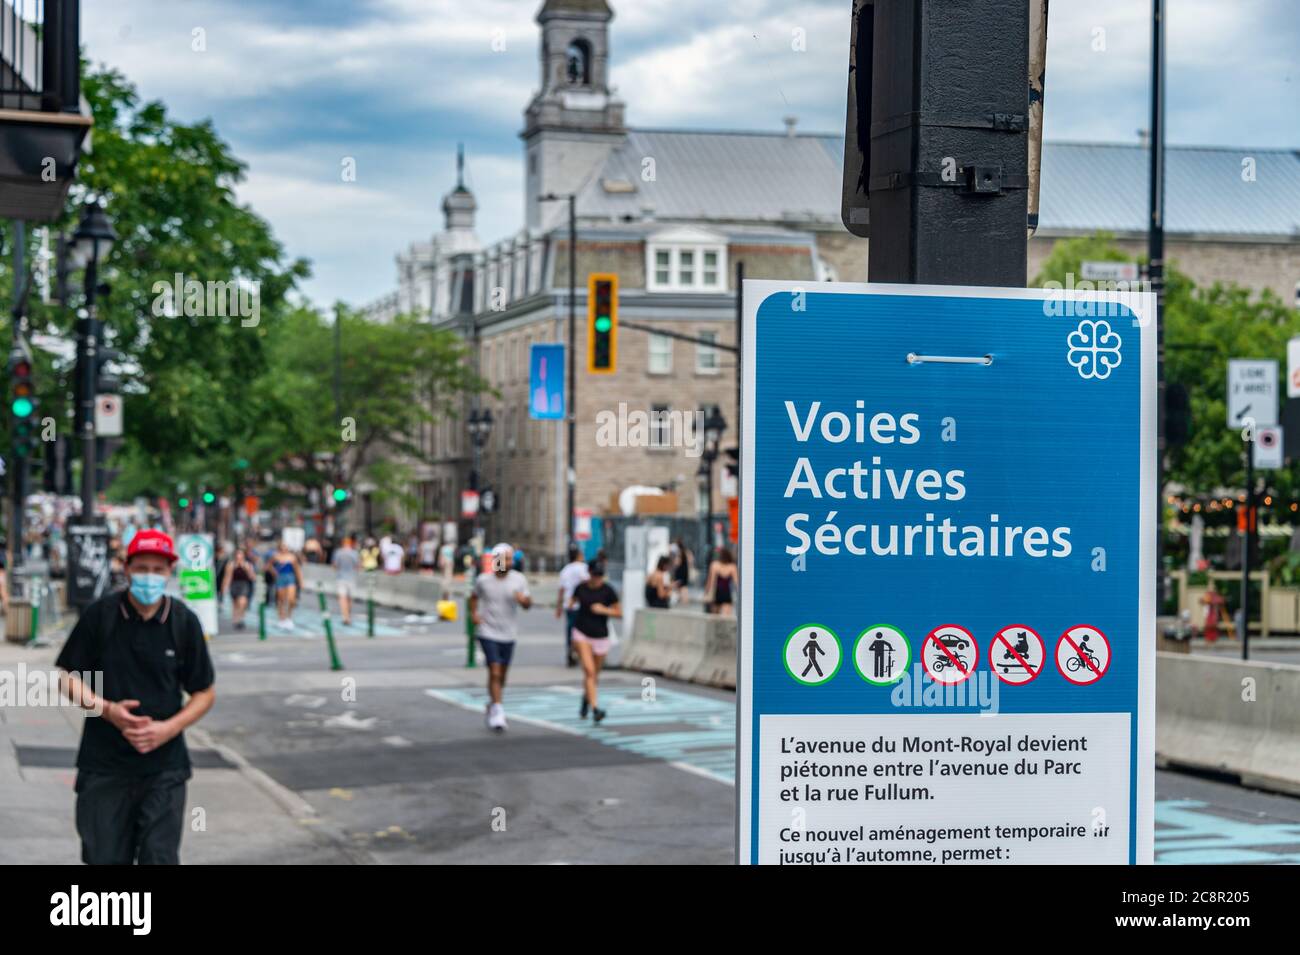 Montreal, CA - 26. Juli 2020: Voies actives securitaires (sichere aktive Transportstrecke) auf der Mont Royal Avenue während der Covid-19 Pandemie Stockfoto